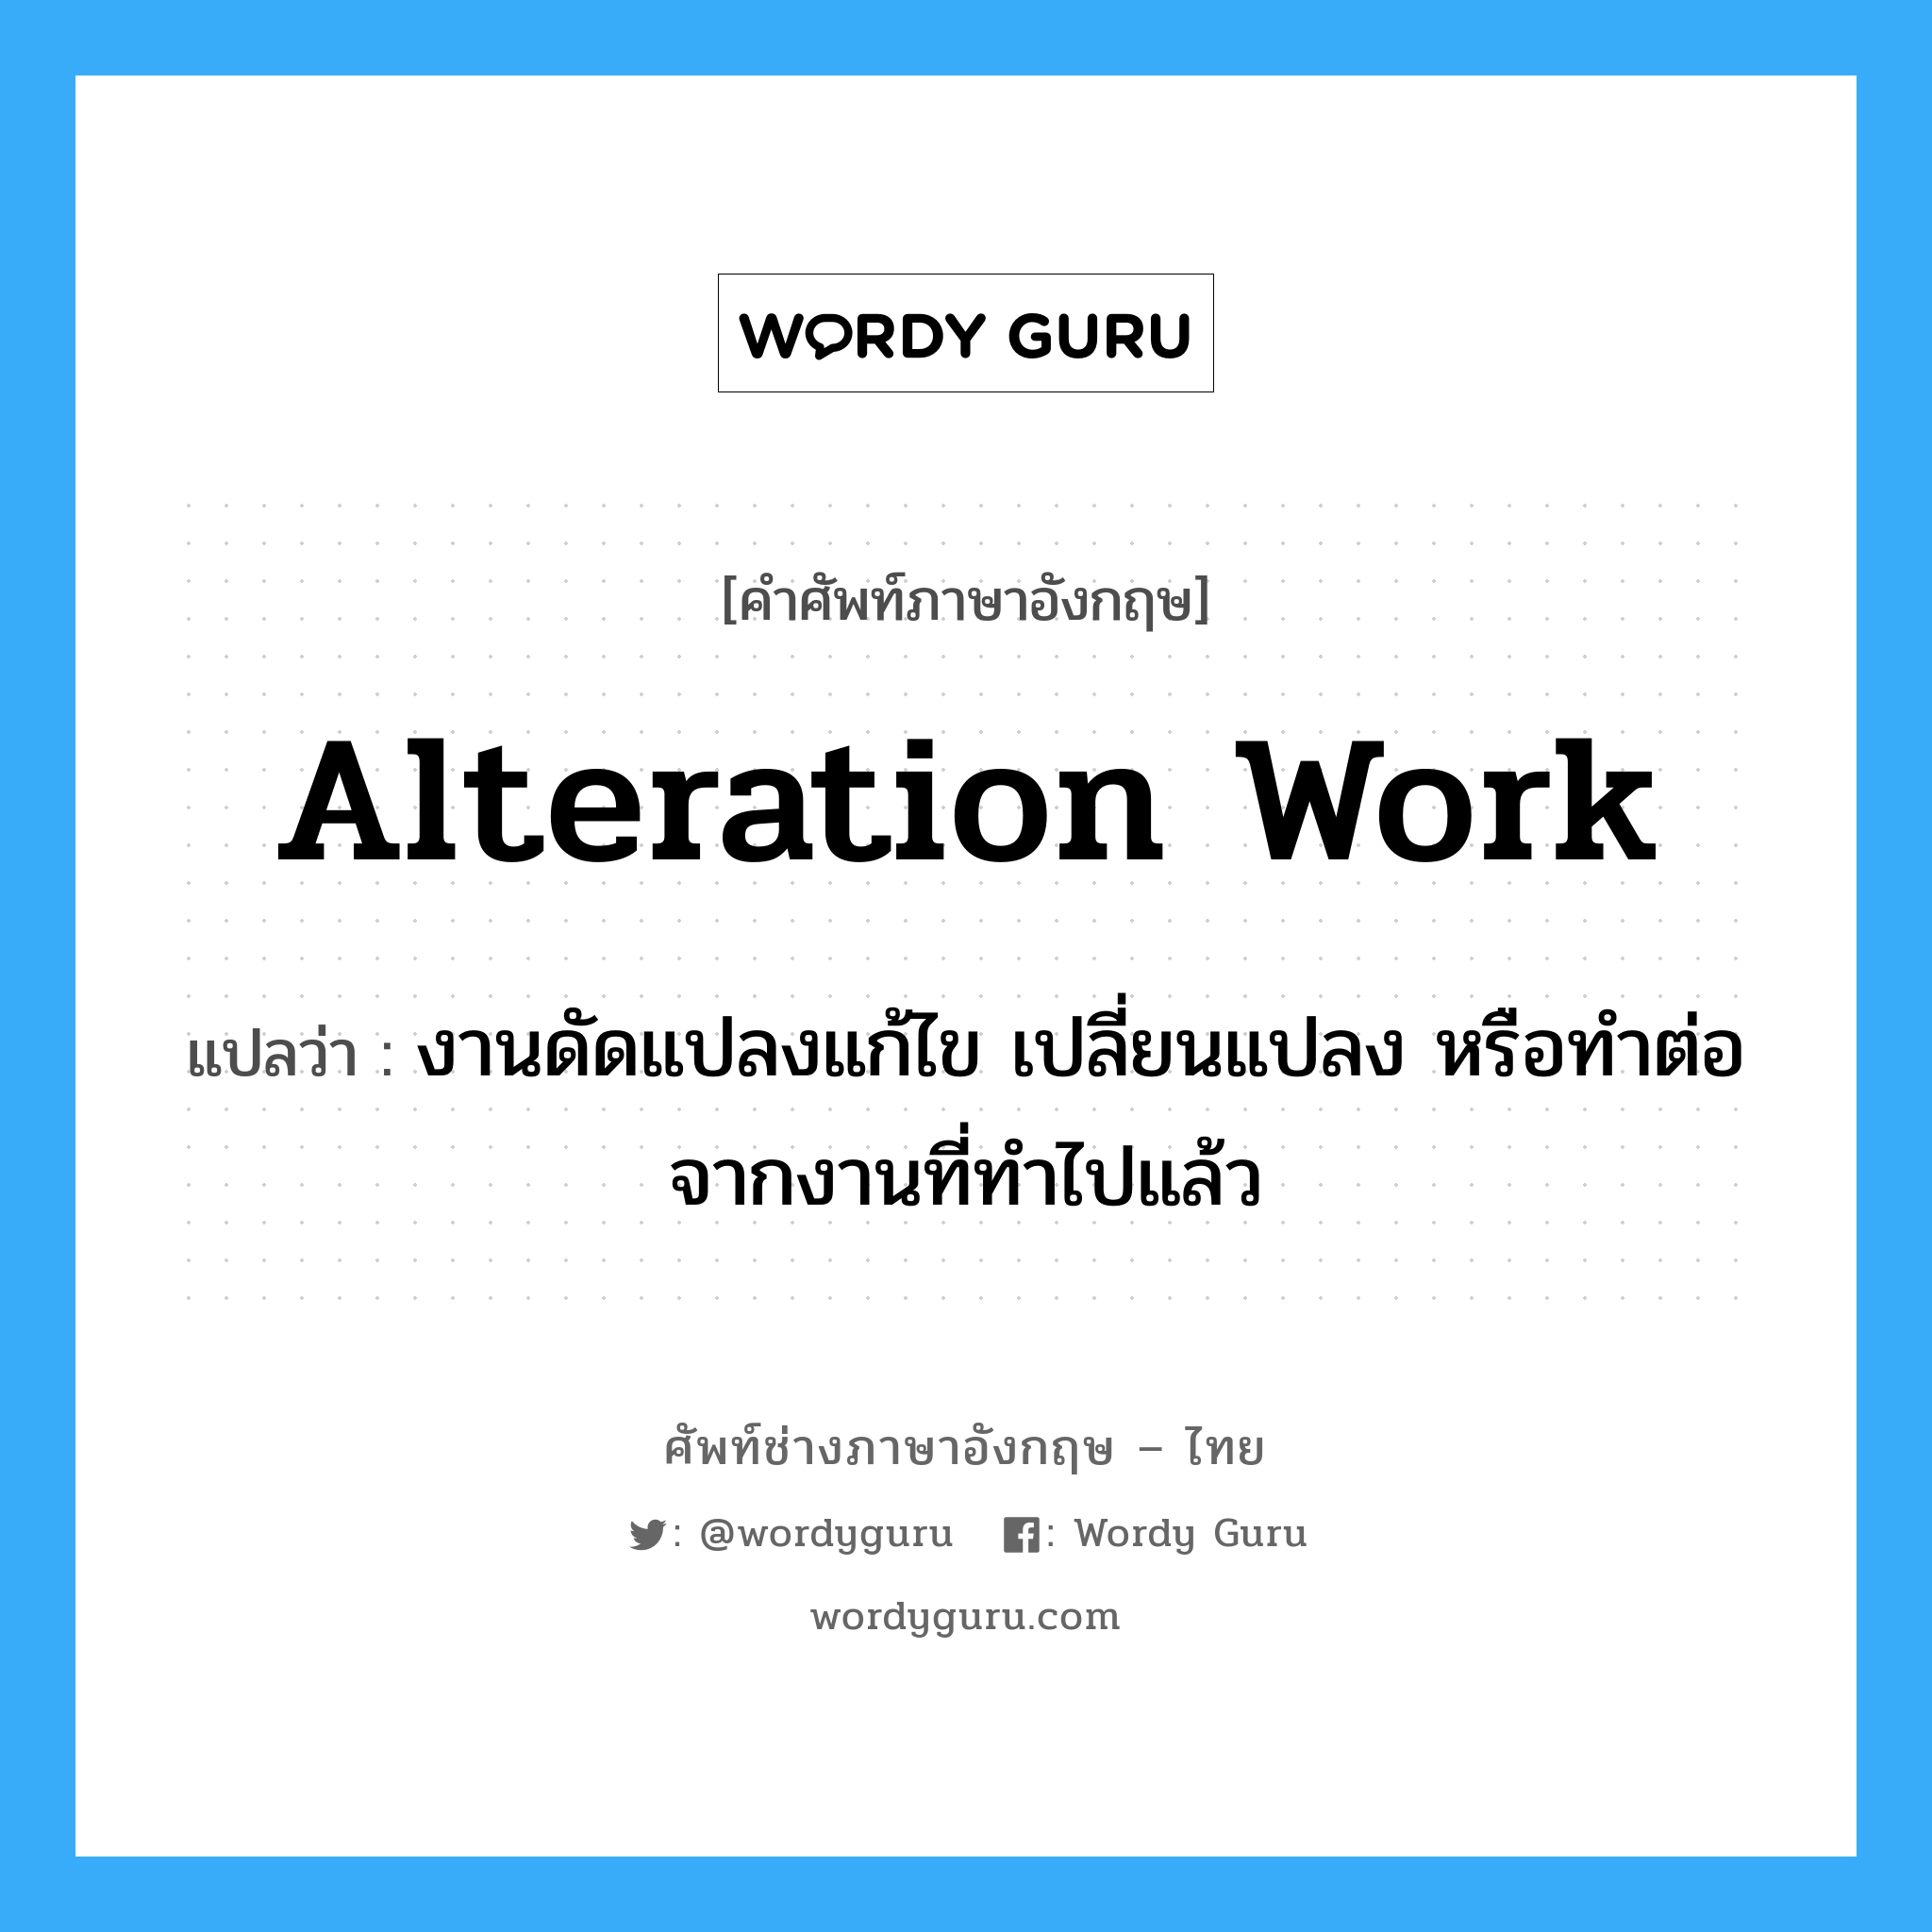 Alteration Work แปลว่า?, คำศัพท์ช่างภาษาอังกฤษ - ไทย Alteration Work คำศัพท์ภาษาอังกฤษ Alteration Work แปลว่า งานดัดแปลงแก้ไข เปลี่ยนแปลง หรือทำต่อจากงานที่ทำไปแล้ว